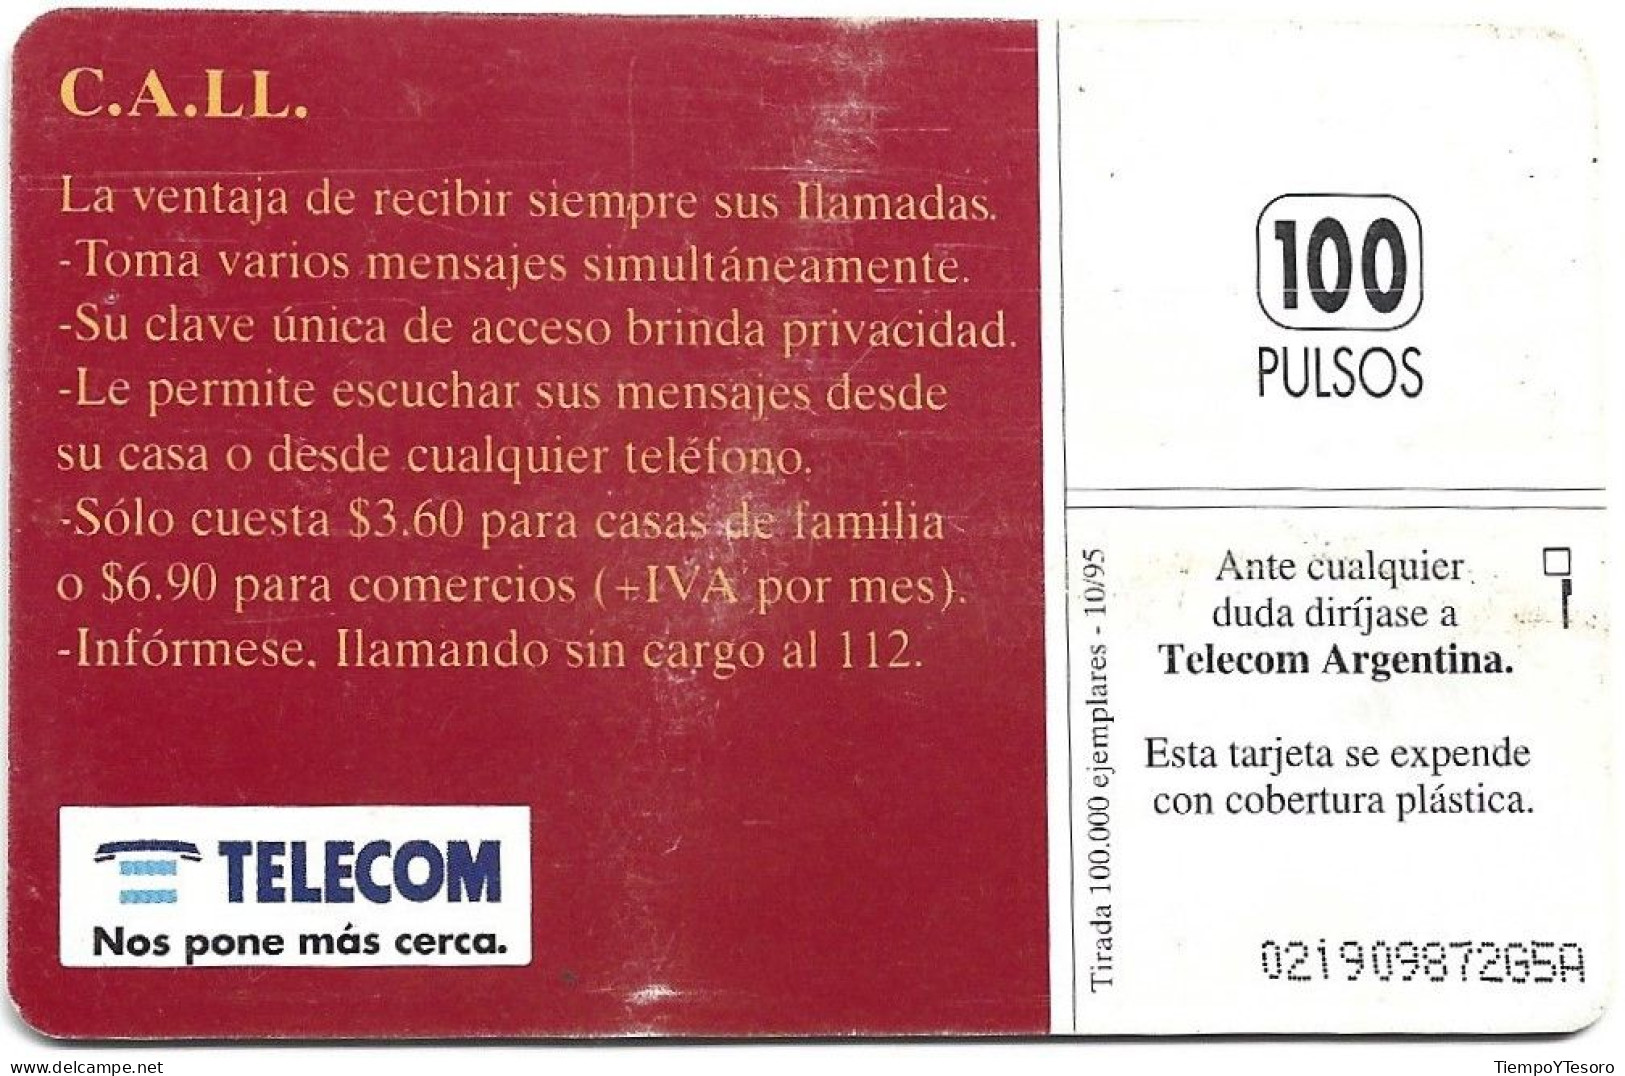 Phonecard - Argentina, C.A.LL., TELECOM, N°1107 - Lots - Collections